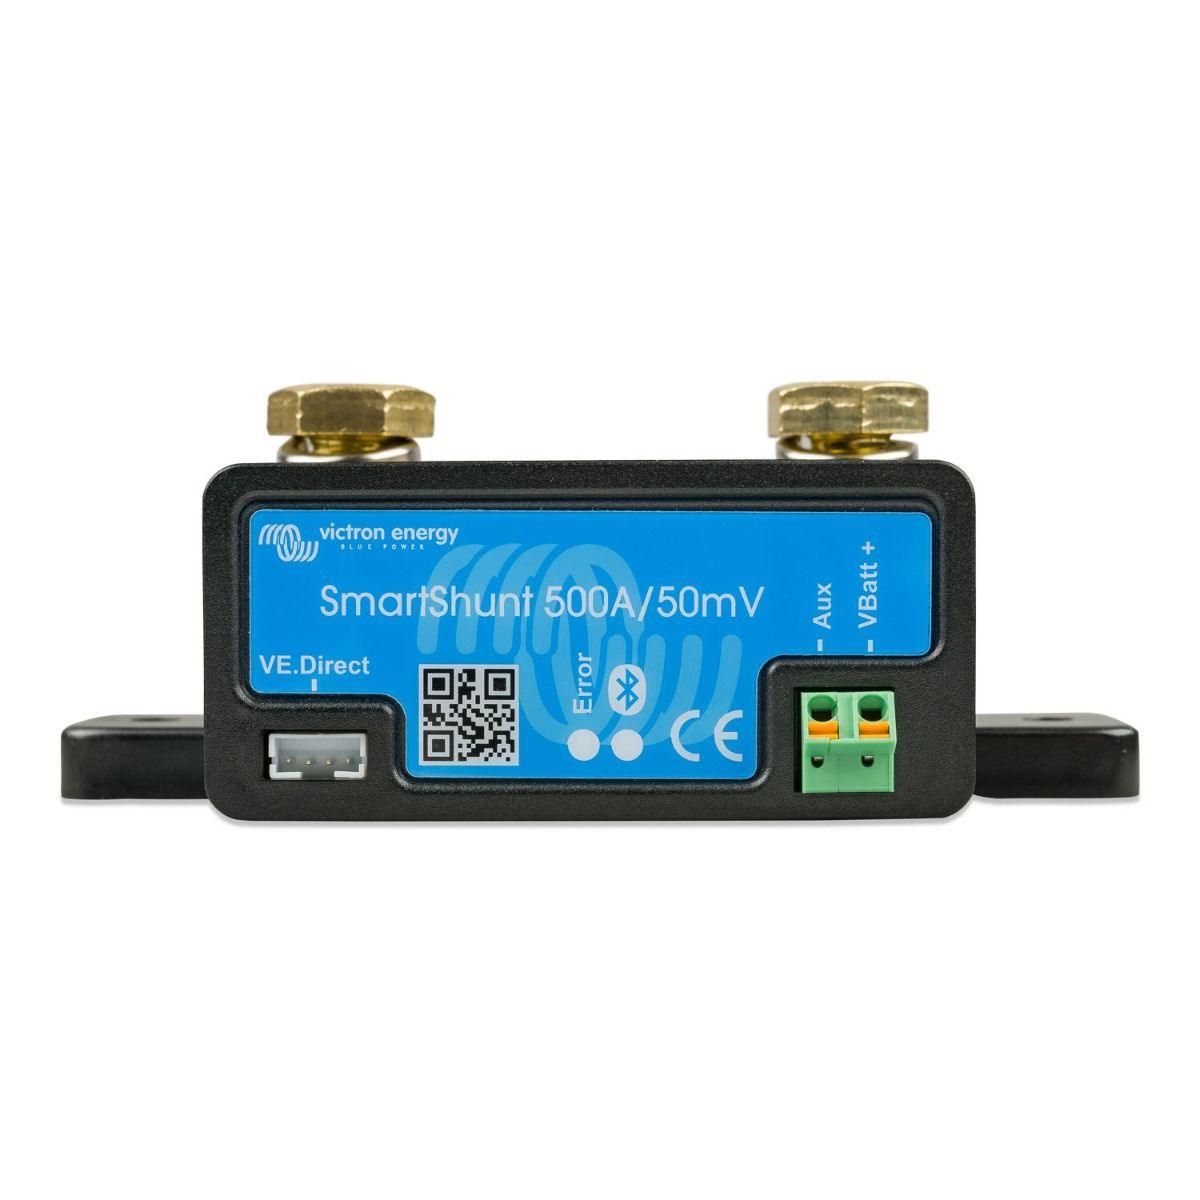 SmartShunt 500A/50mV - SHU050150050 - VoltaconSolar